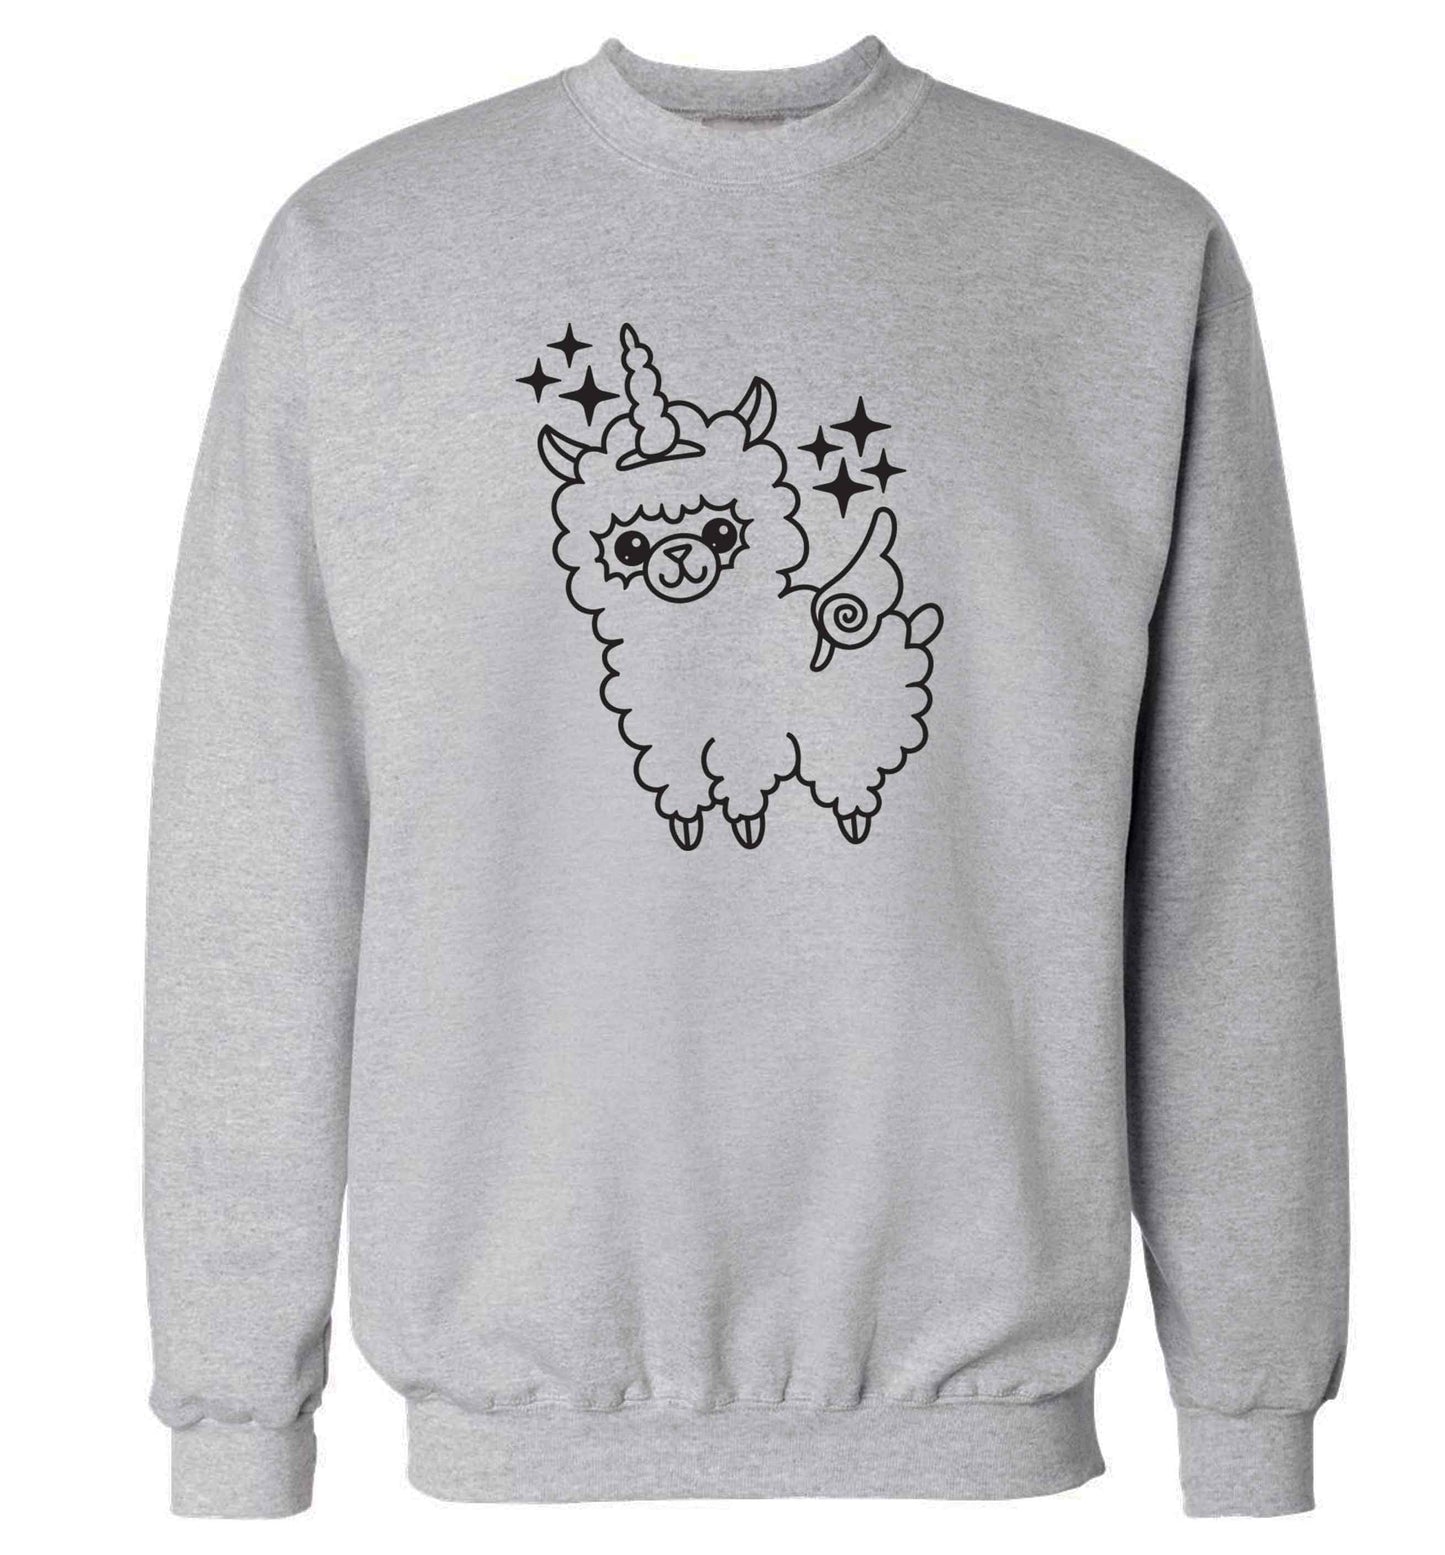 Llamacorn llama unicorn adult's unisex grey sweater 2XL